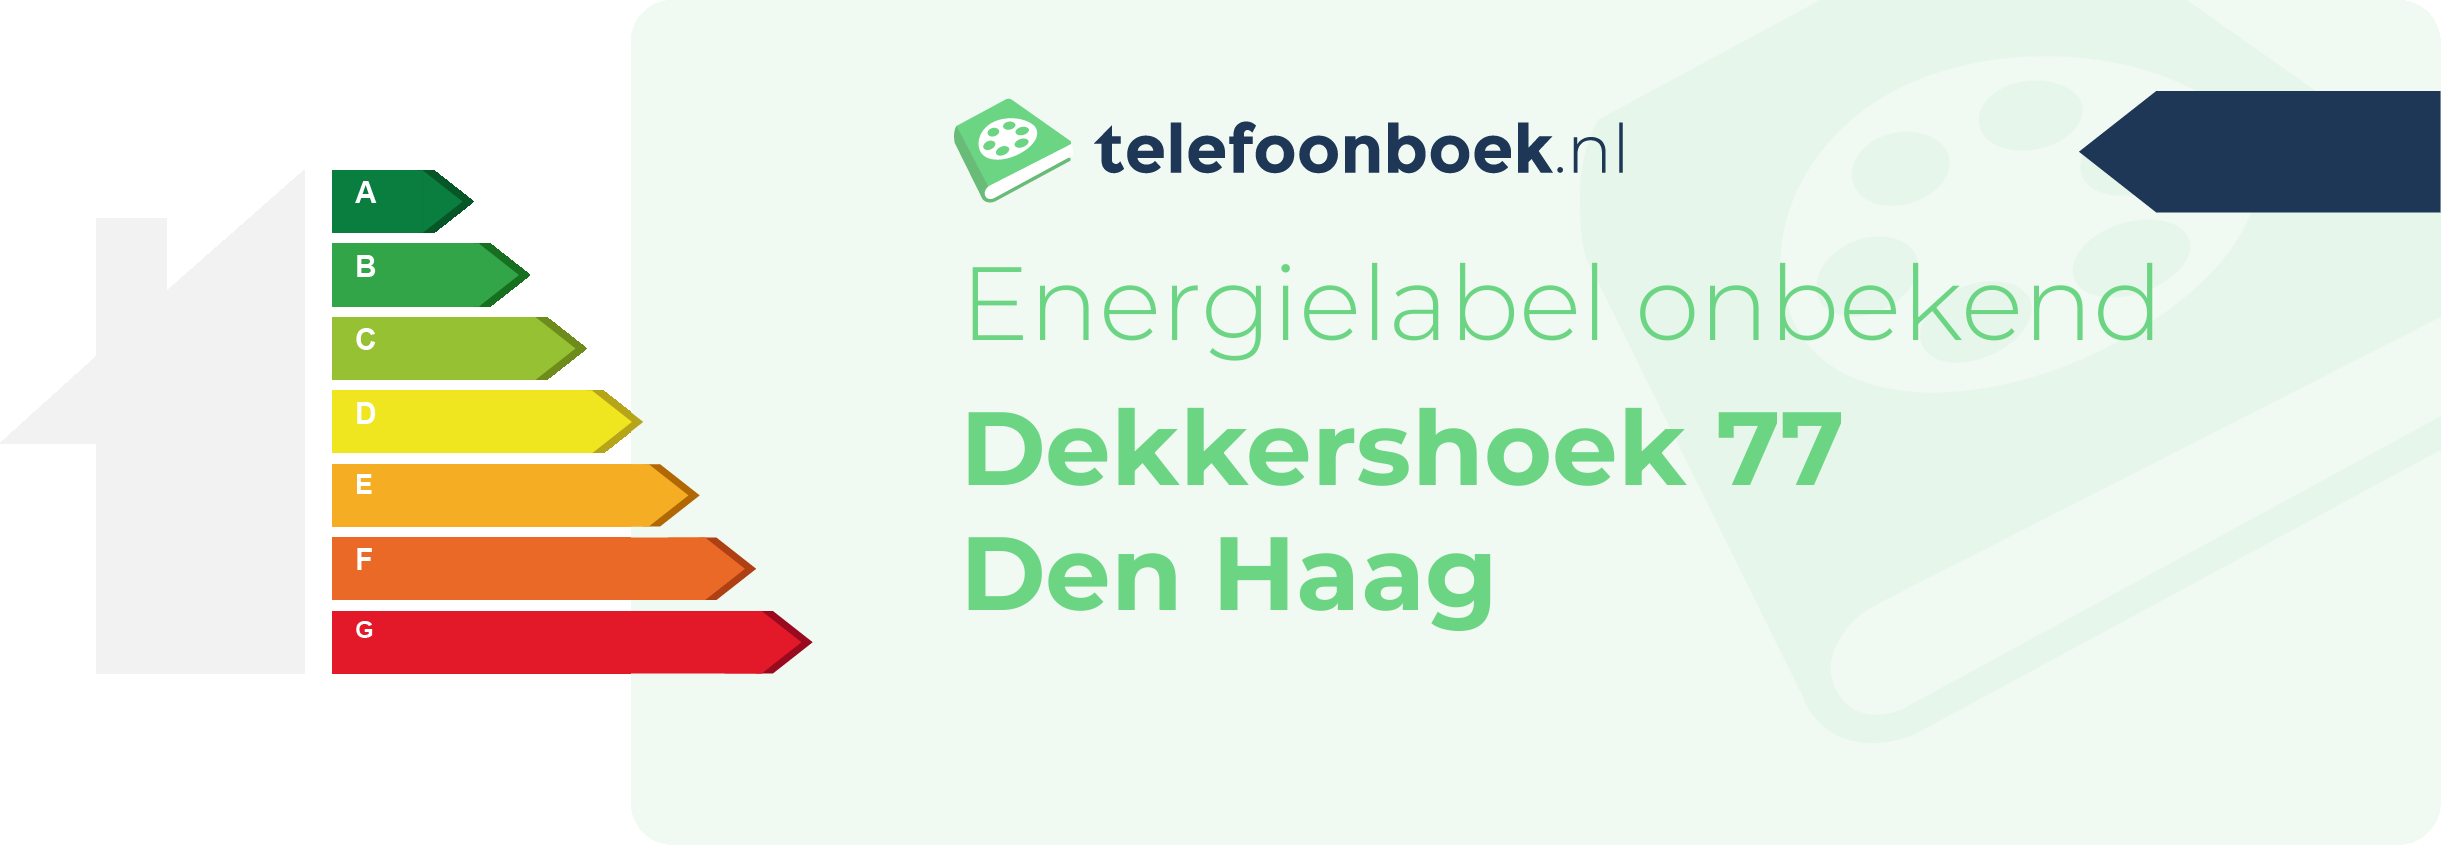 Energielabel Dekkershoek 77 Den Haag